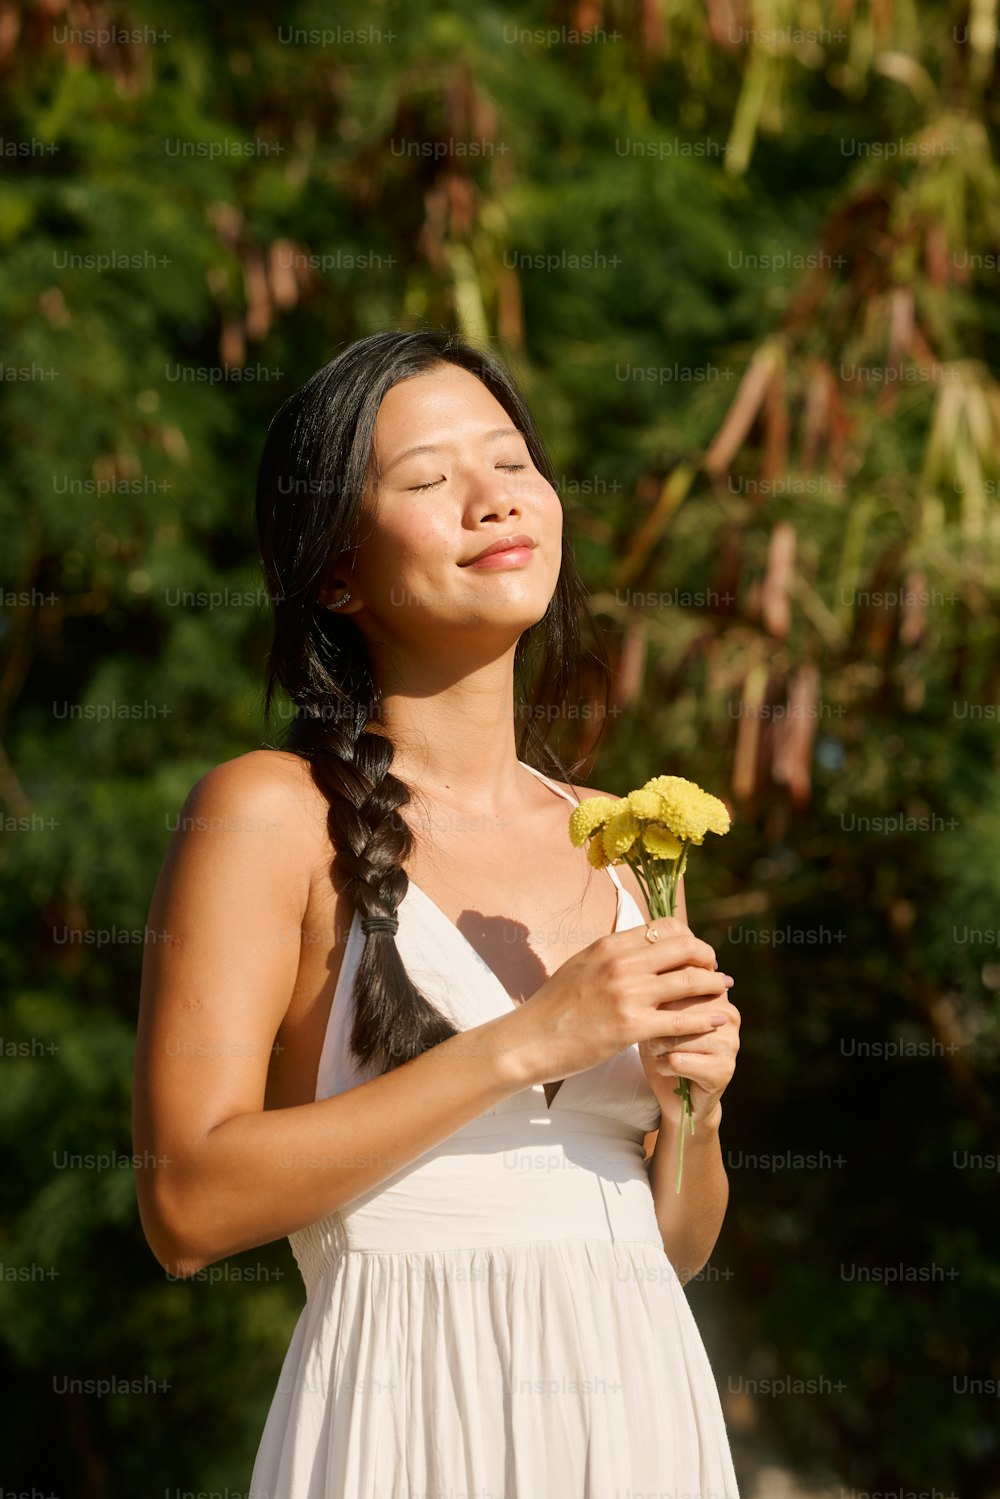 노란 꽃을 들고 있는 흰 드레스를 입은 여자